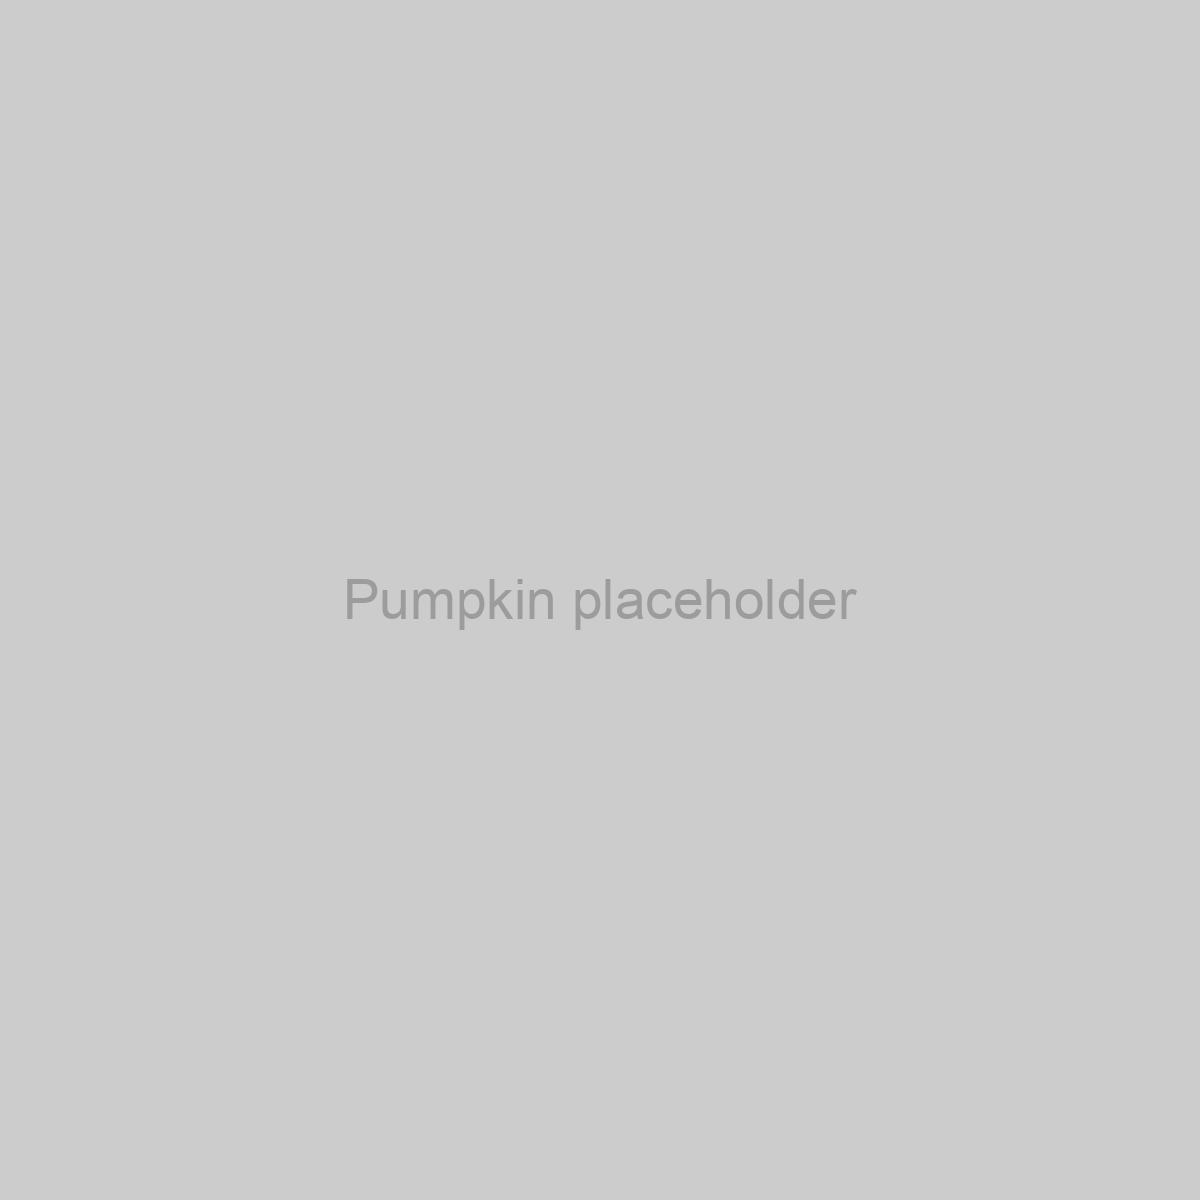 Pumpkin Placeholder Image